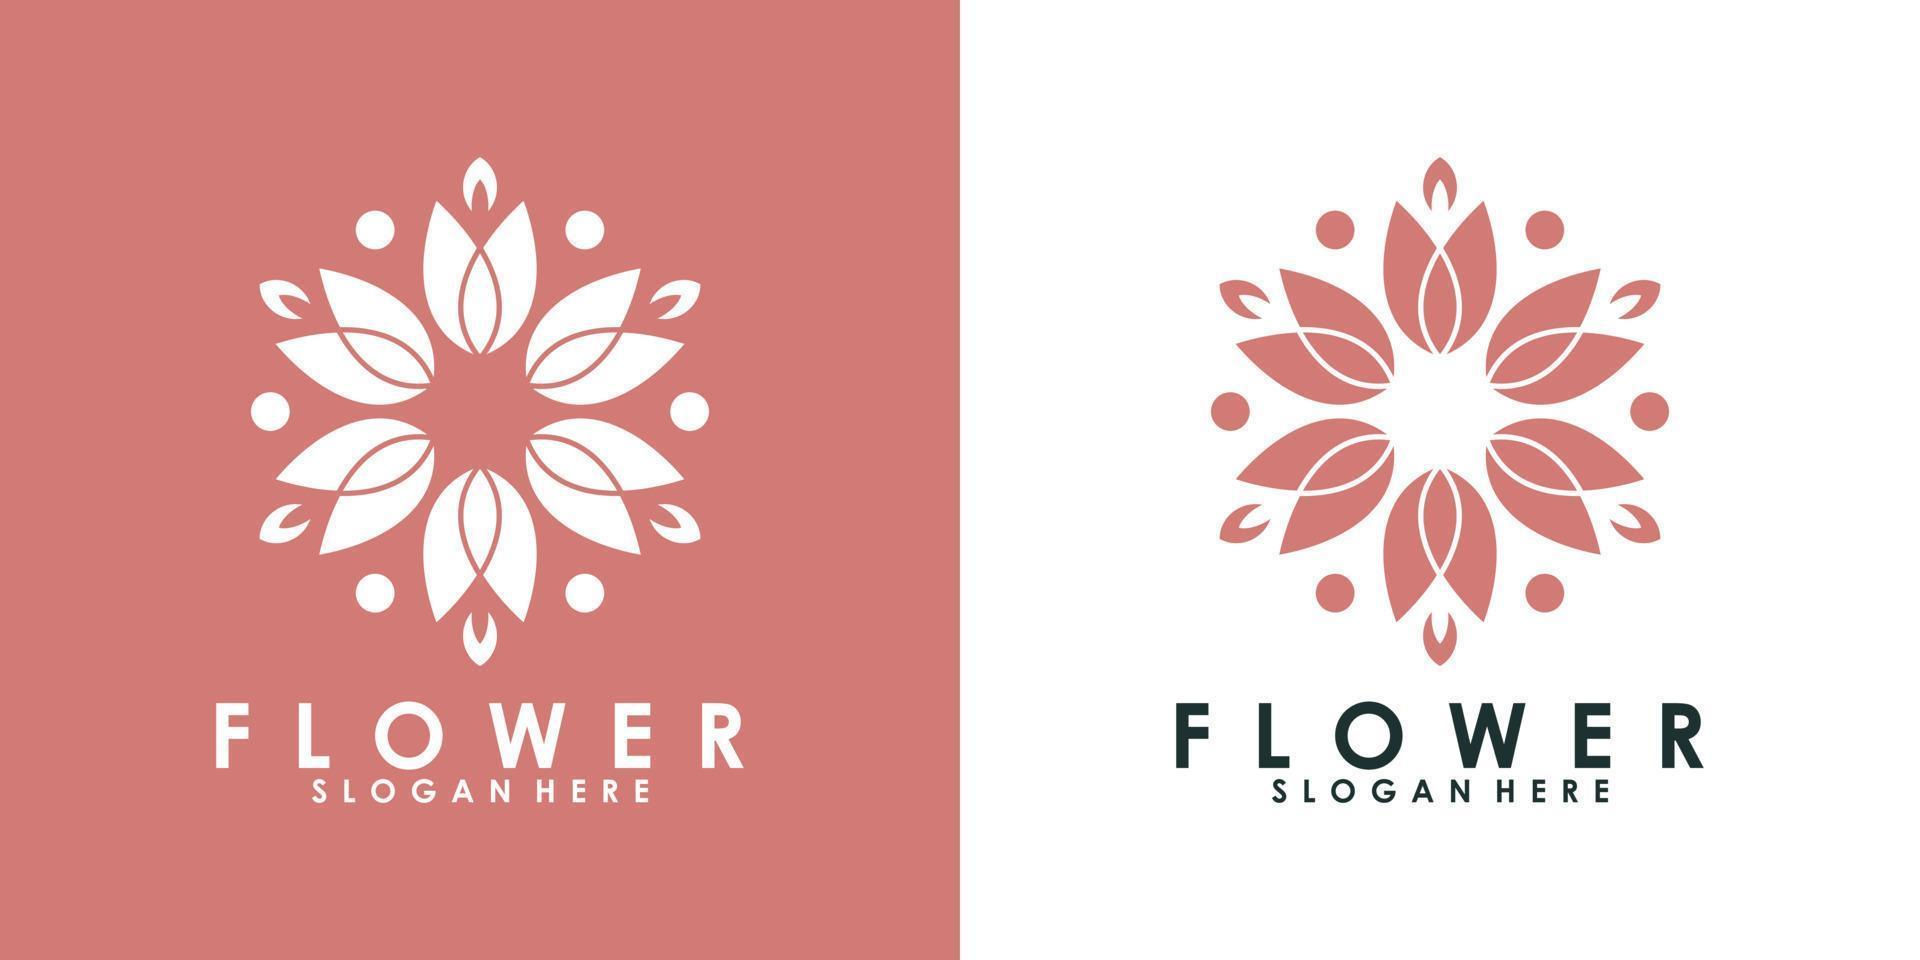 flower logo design white moderen style Premium Vector